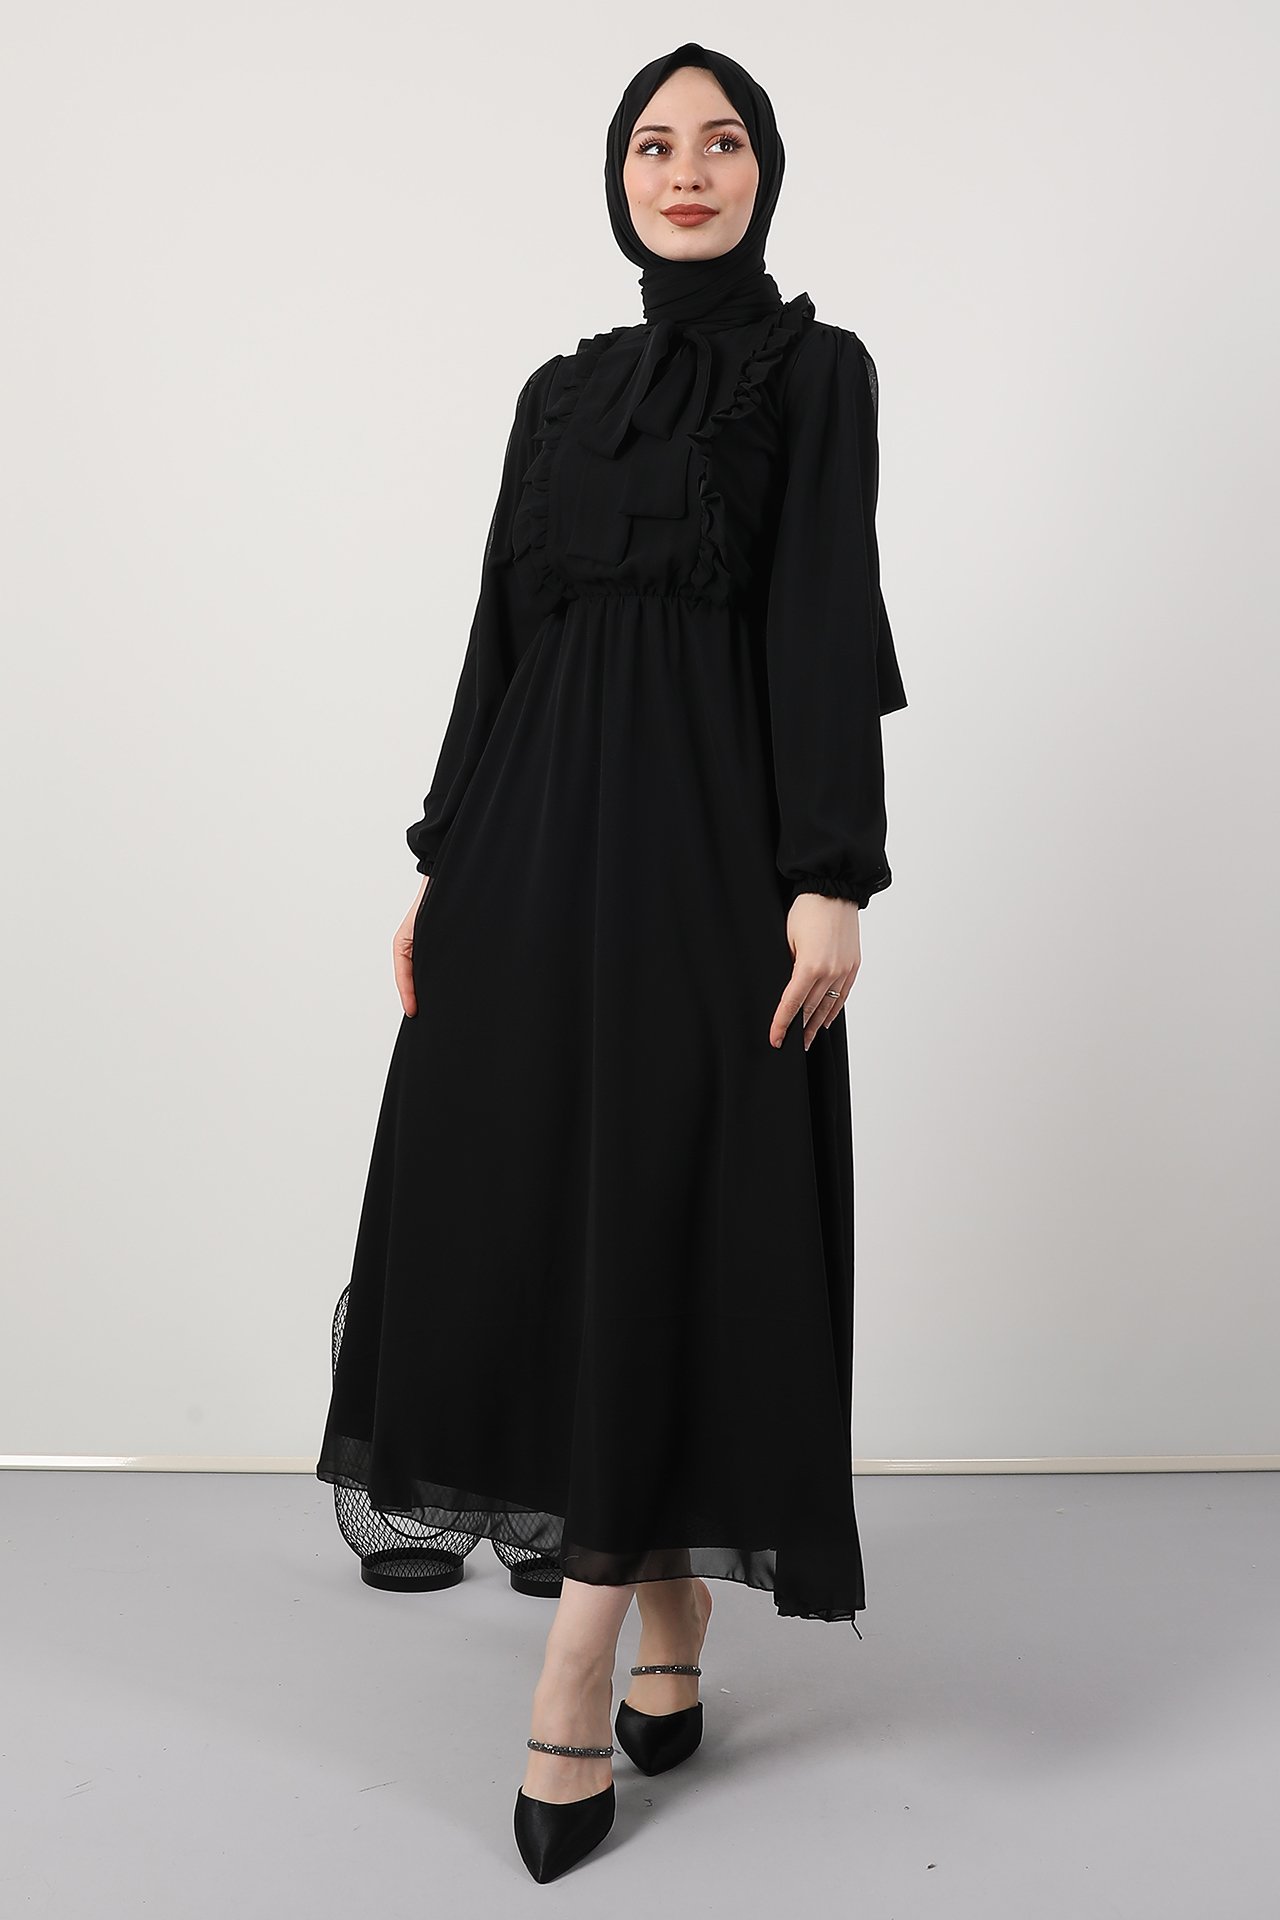 GİZAGİYİM - Giza Beli Lastikli Fırfırlı Elbise Siyah